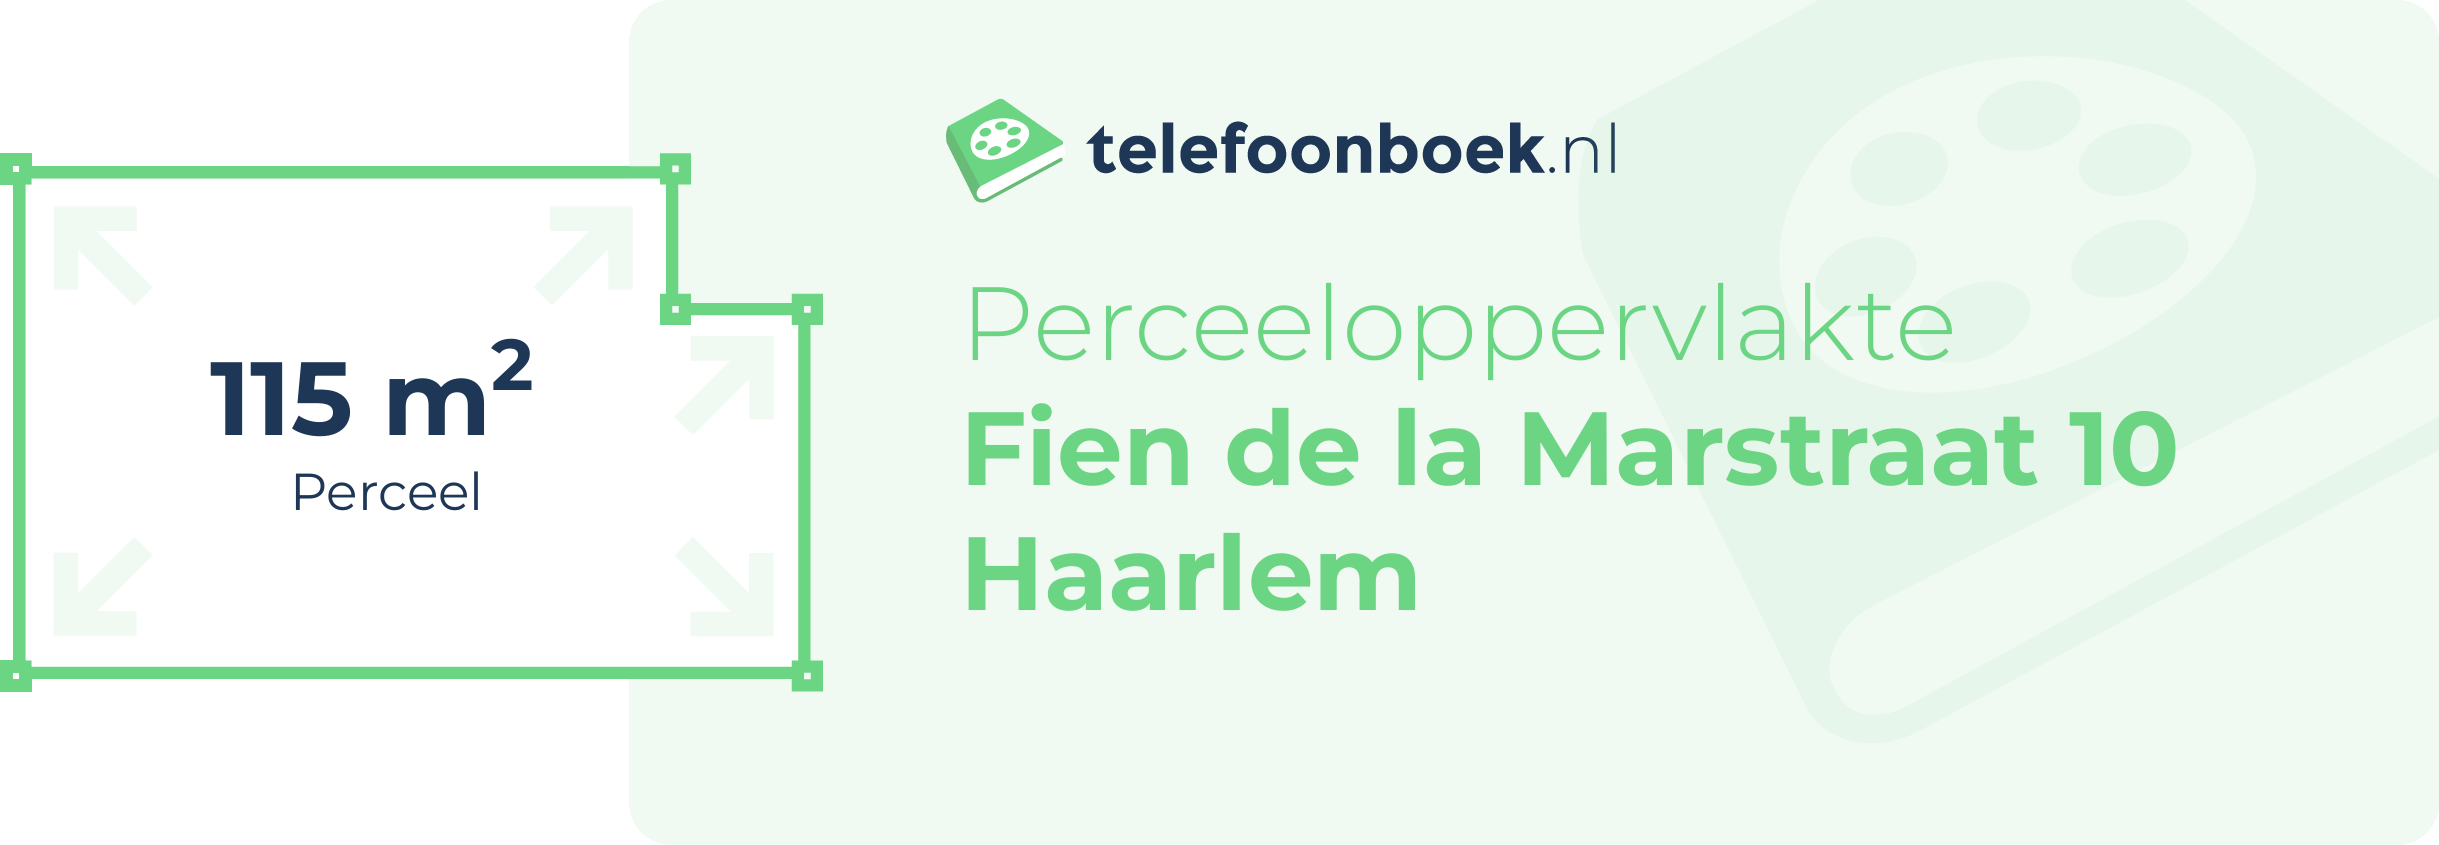 Perceeloppervlakte Fien De La Marstraat 10 Haarlem